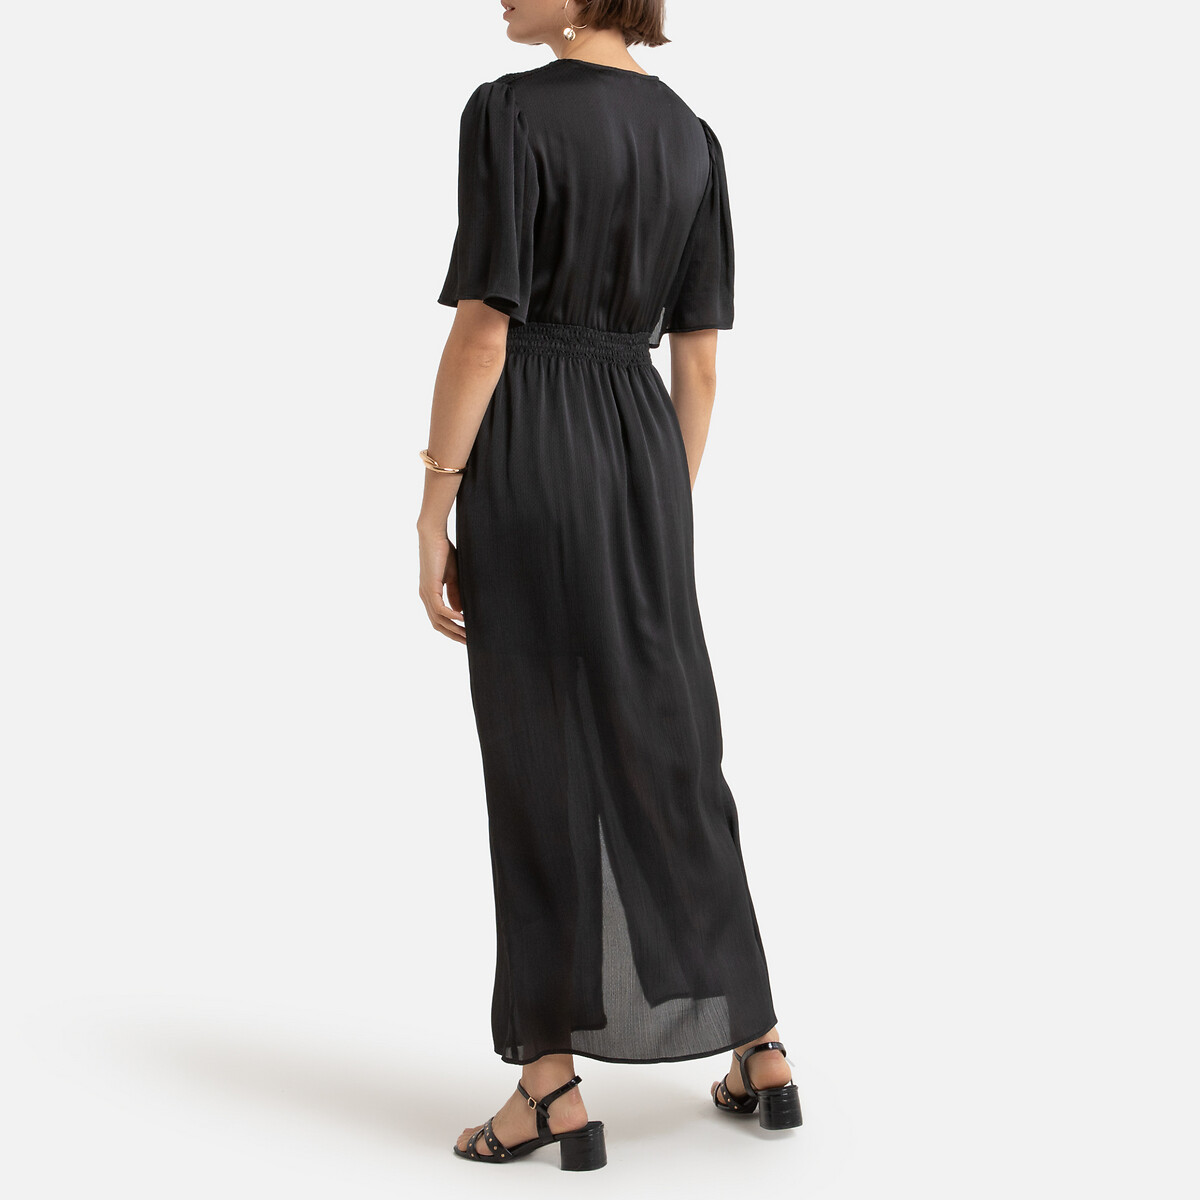 Платье LaRedoute Длинное V-образный вырез короткие рукава 1(S) черный, размер 1(S) Длинное V-образный вырез короткие рукава 1(S) черный - фото 3